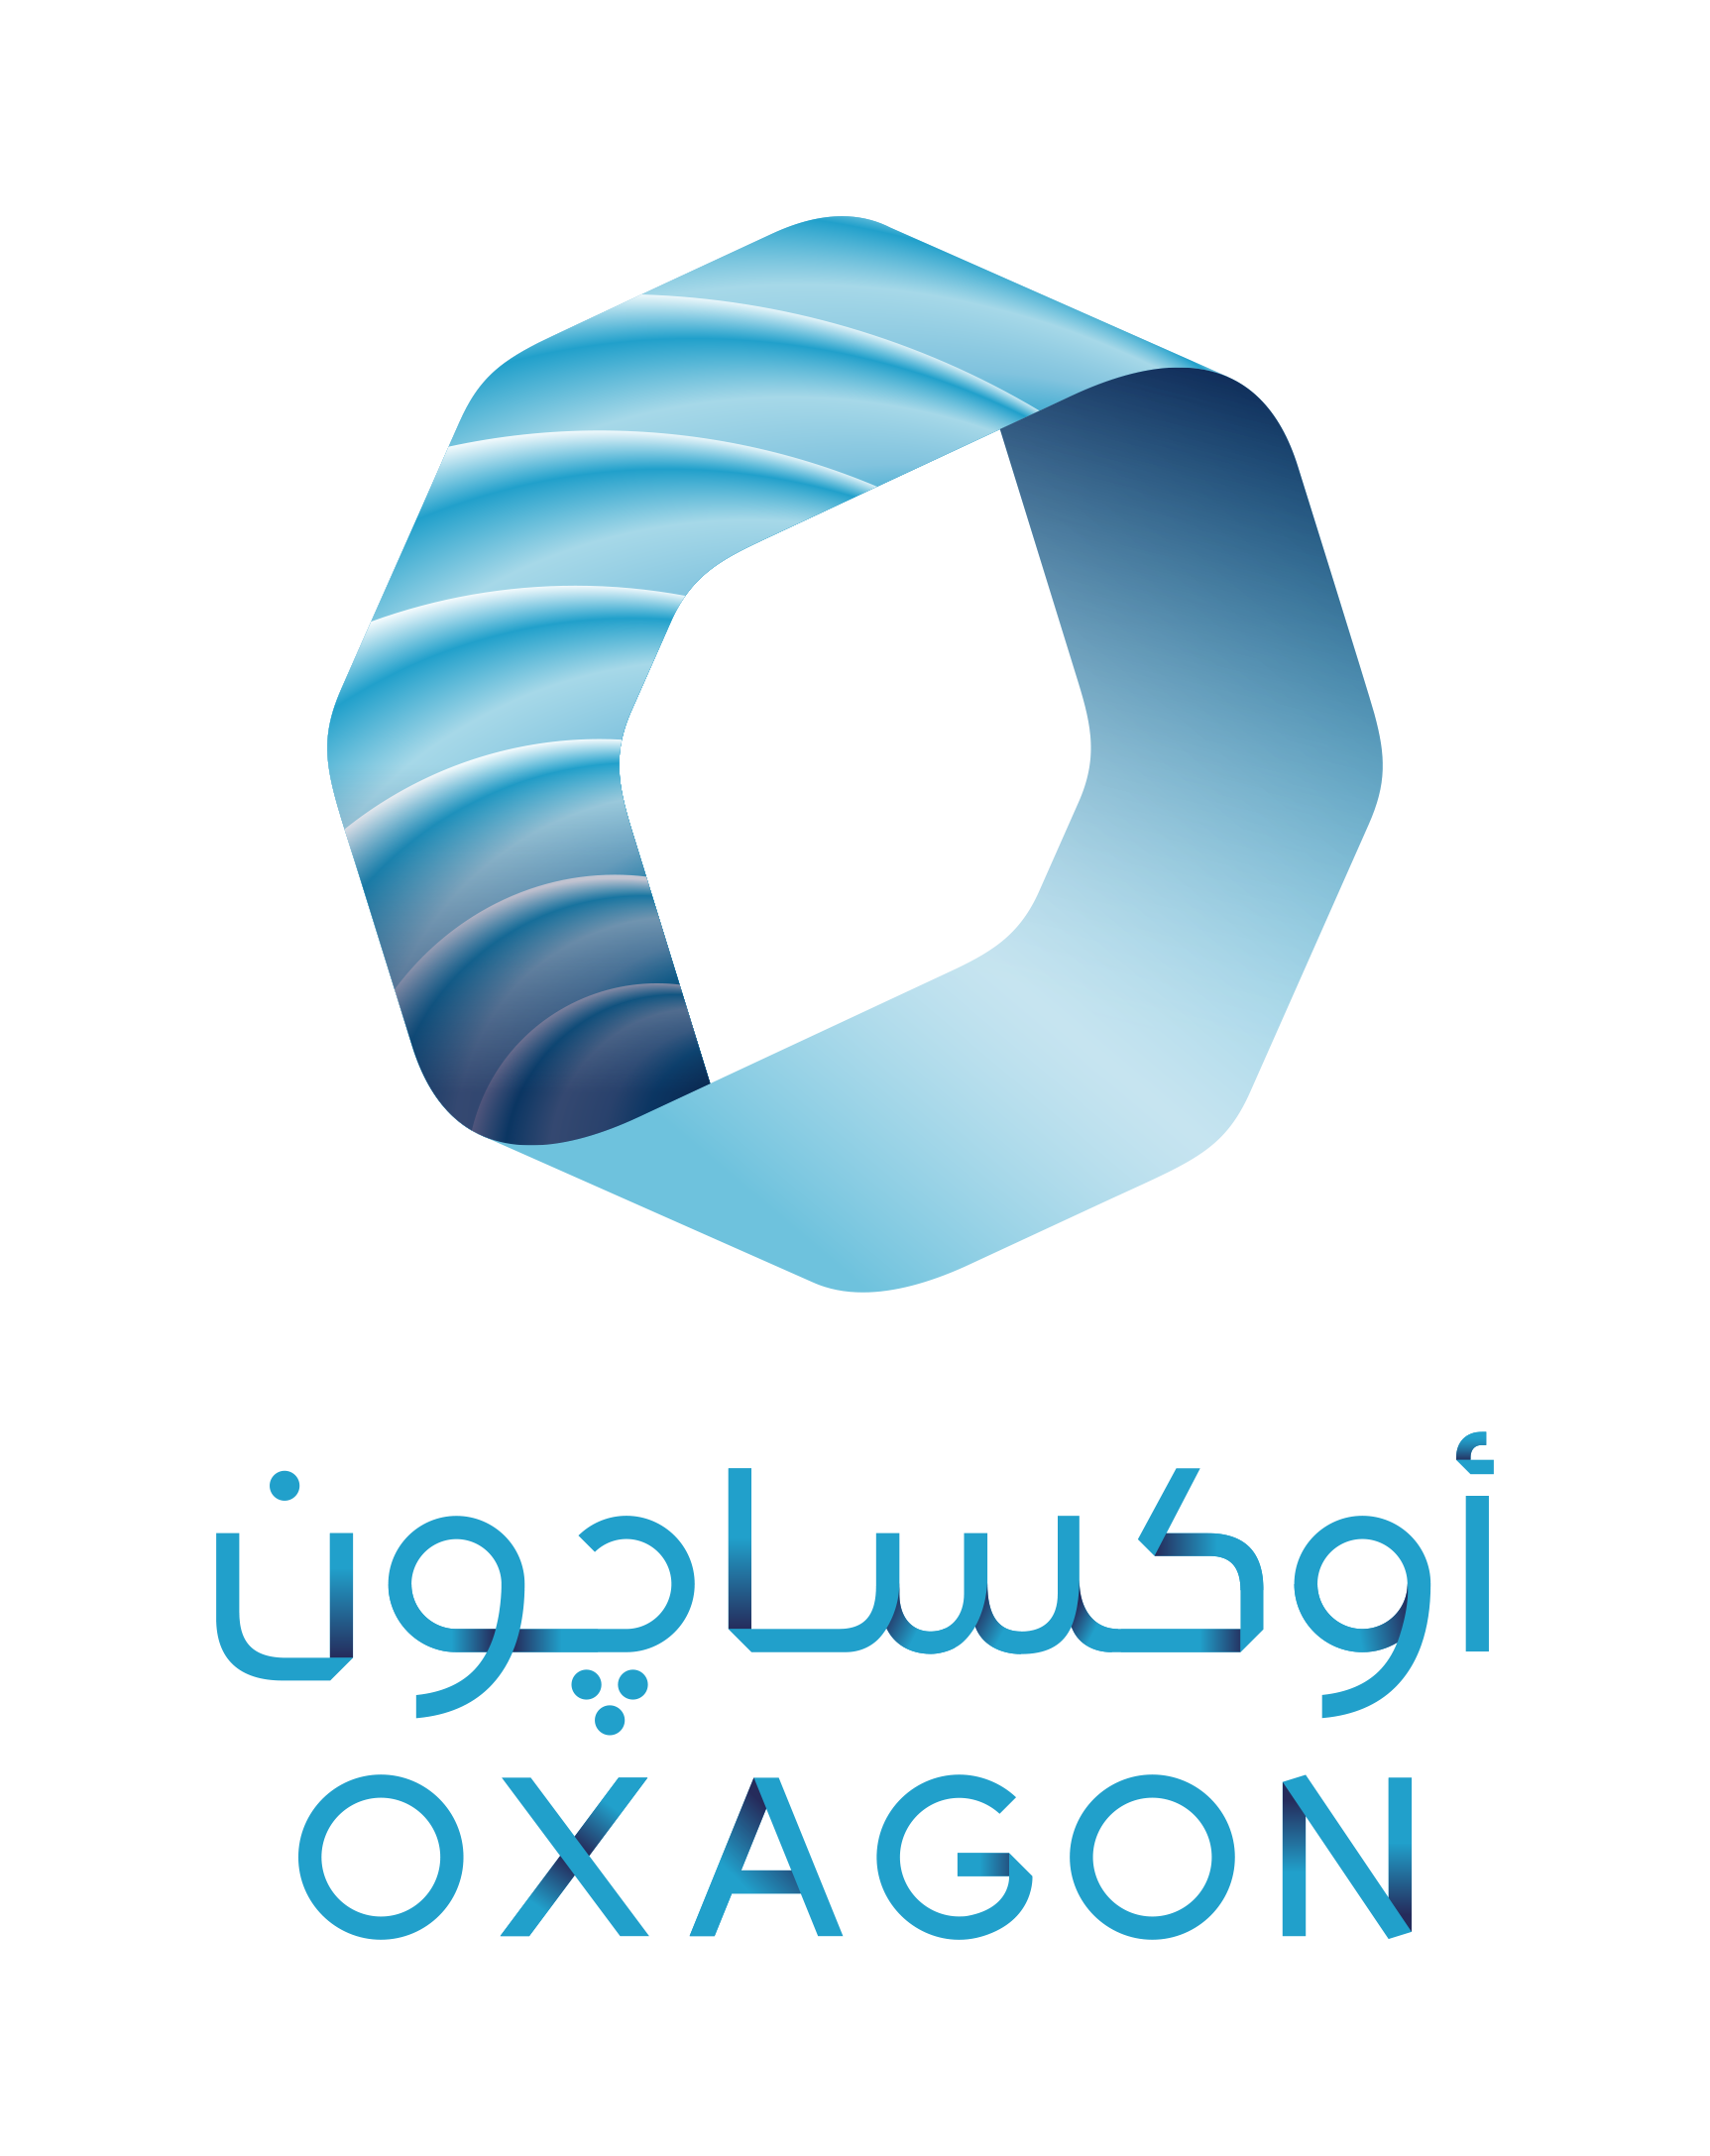 oxagon accelerator